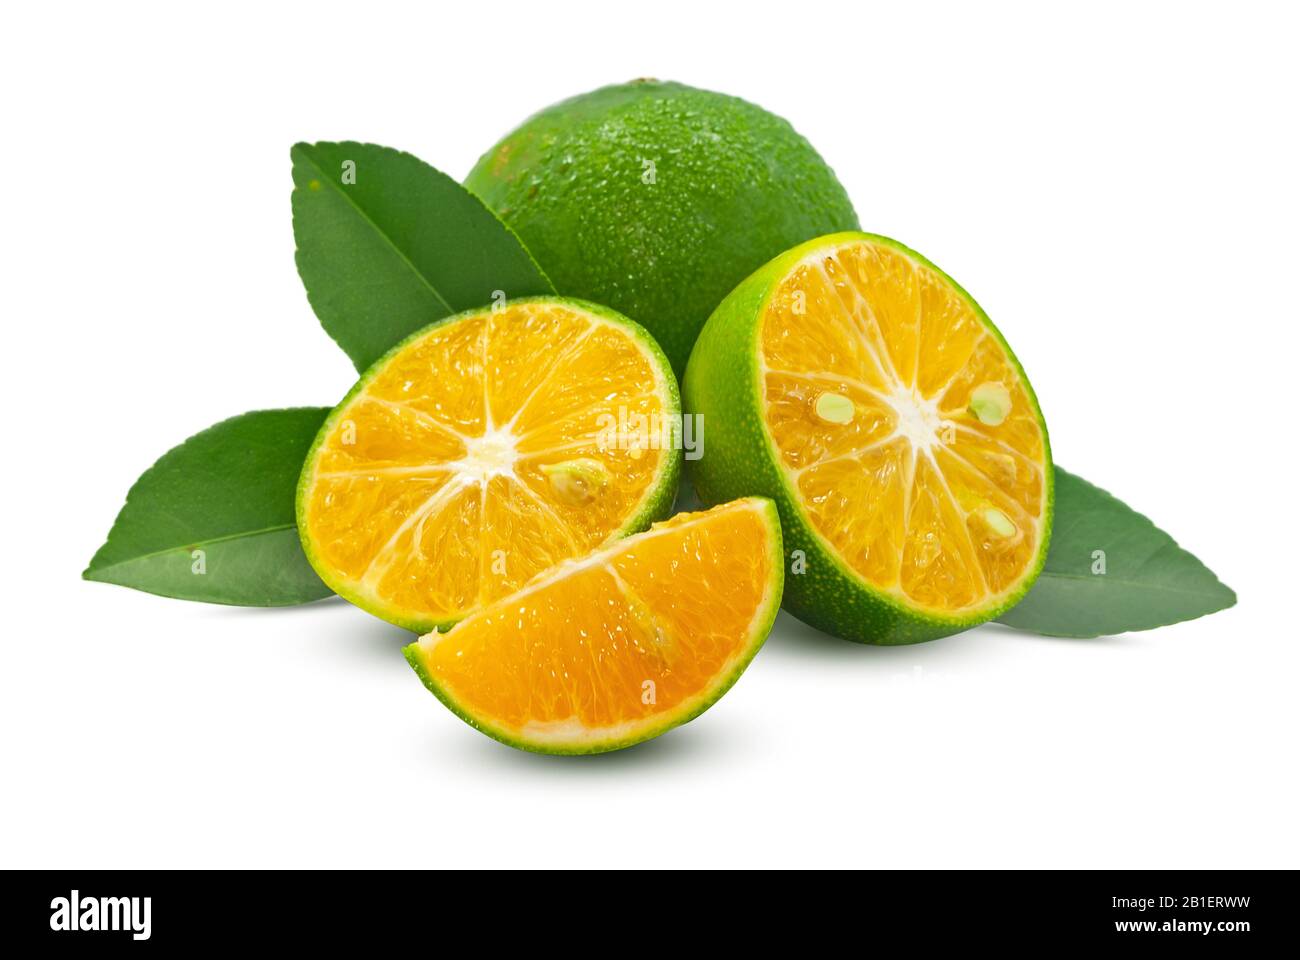 Green orange fruit isolated on white background Stock Photo - Alamy